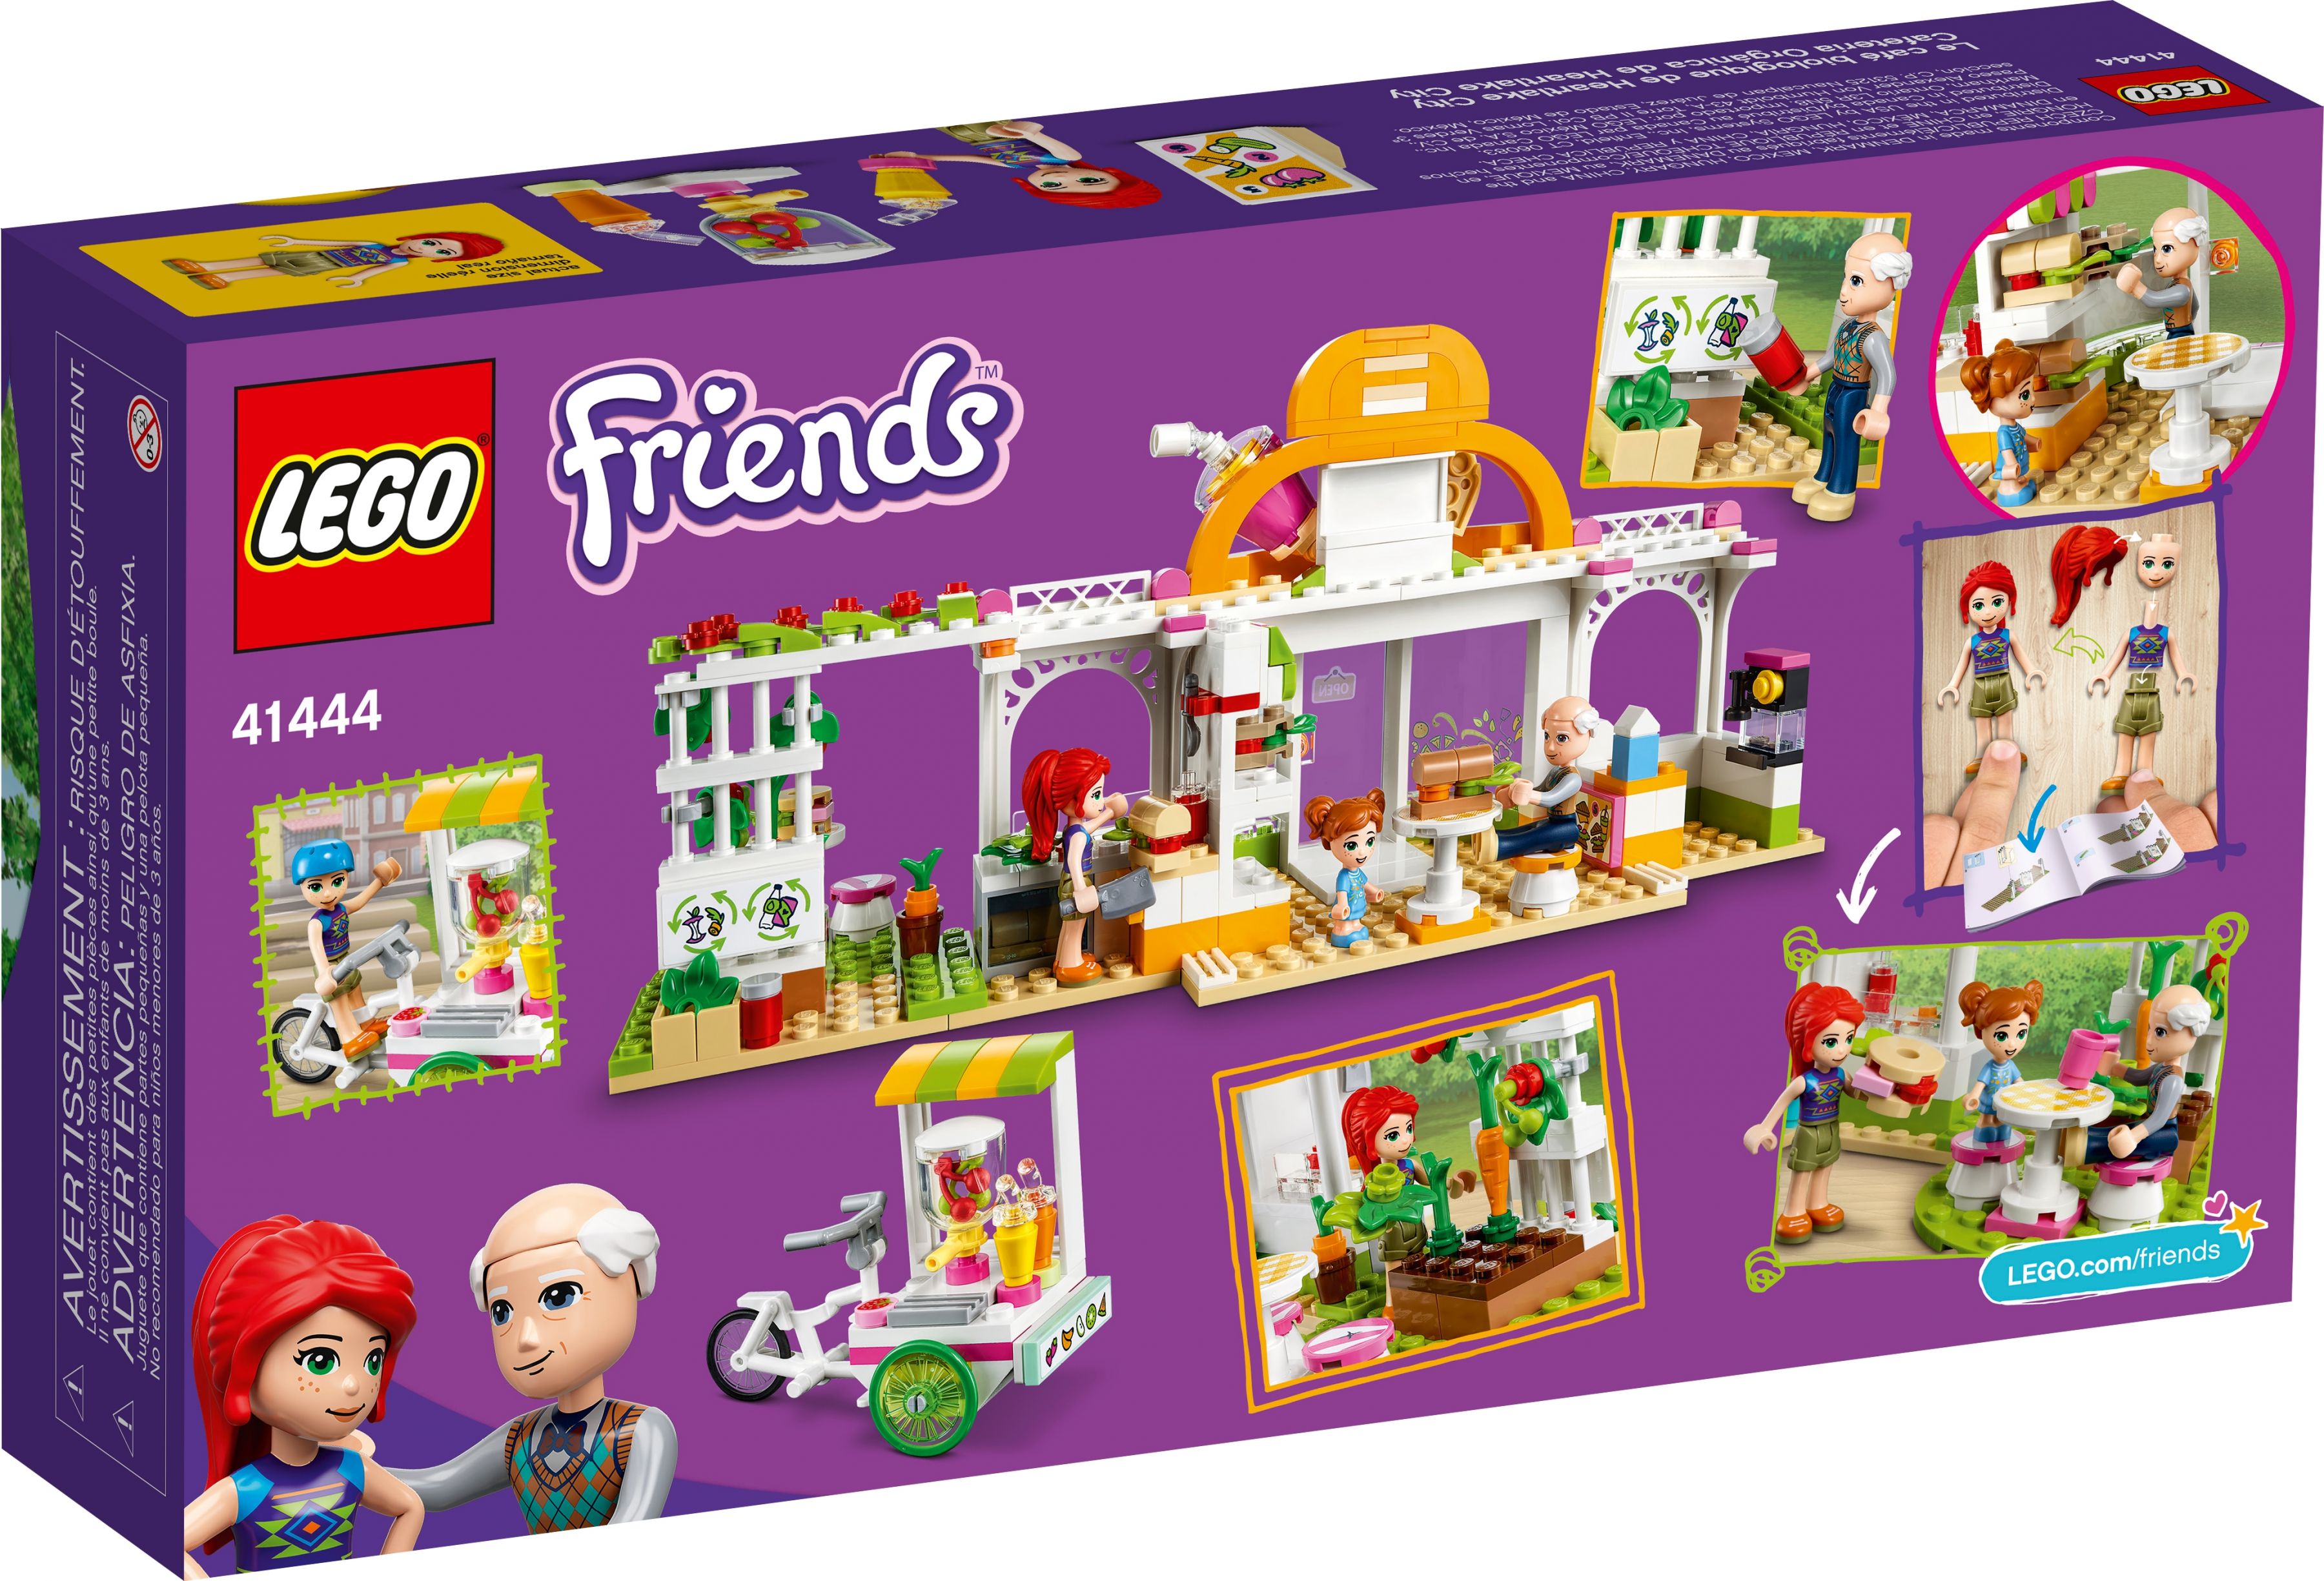 LEGO Friends 41444 Heartlake City Bio-Café LEGO_41444_alt11.jpg